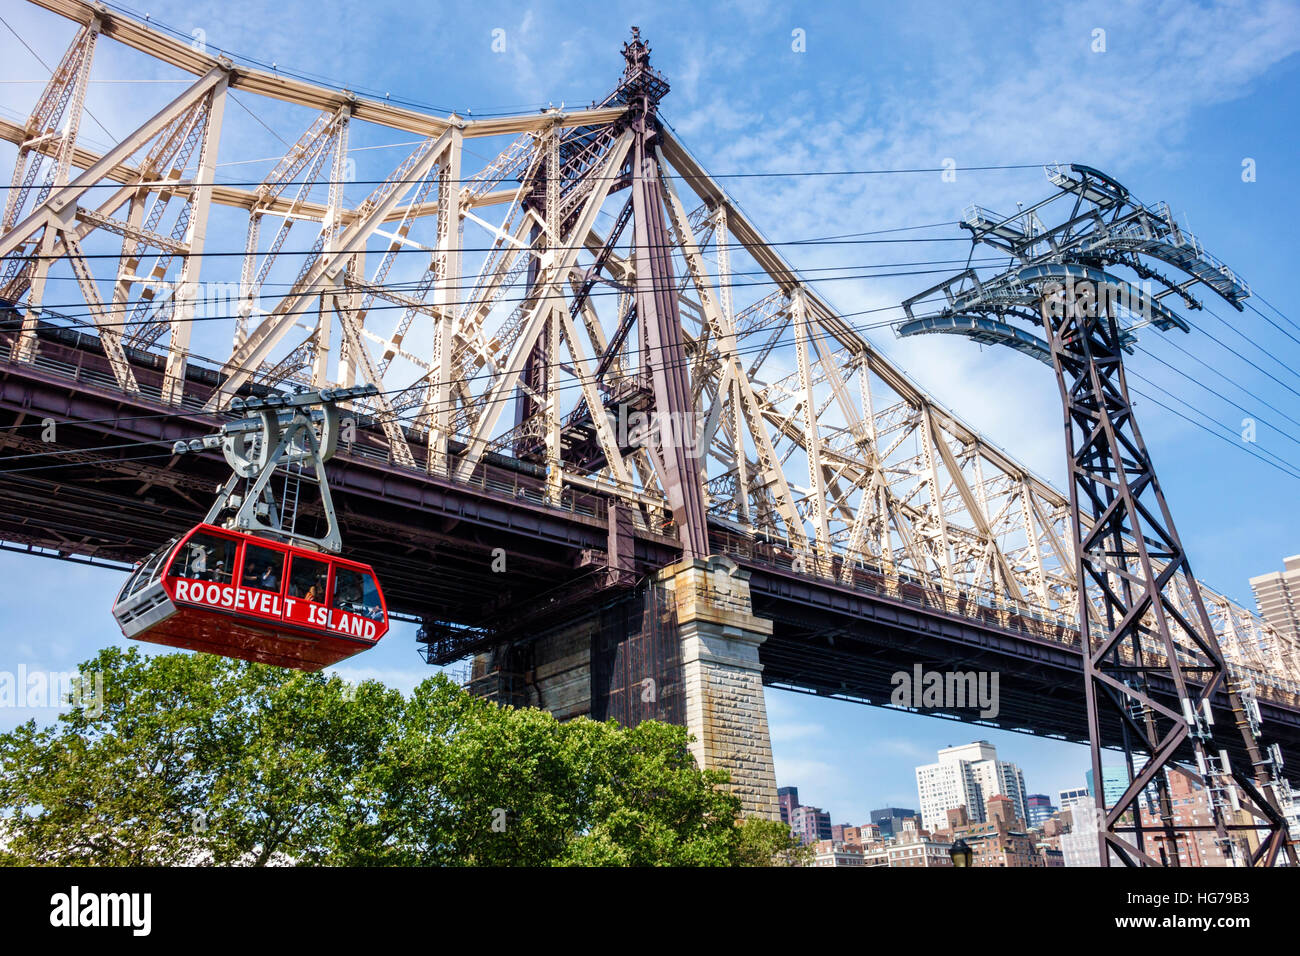 New York City, NY NYC, East River Water, Roosevelt Island Tram, tramway aérien de banlieue, pont Ed Koch Queensboro, tour de soutien, les visiteurs voyagent Banque D'Images